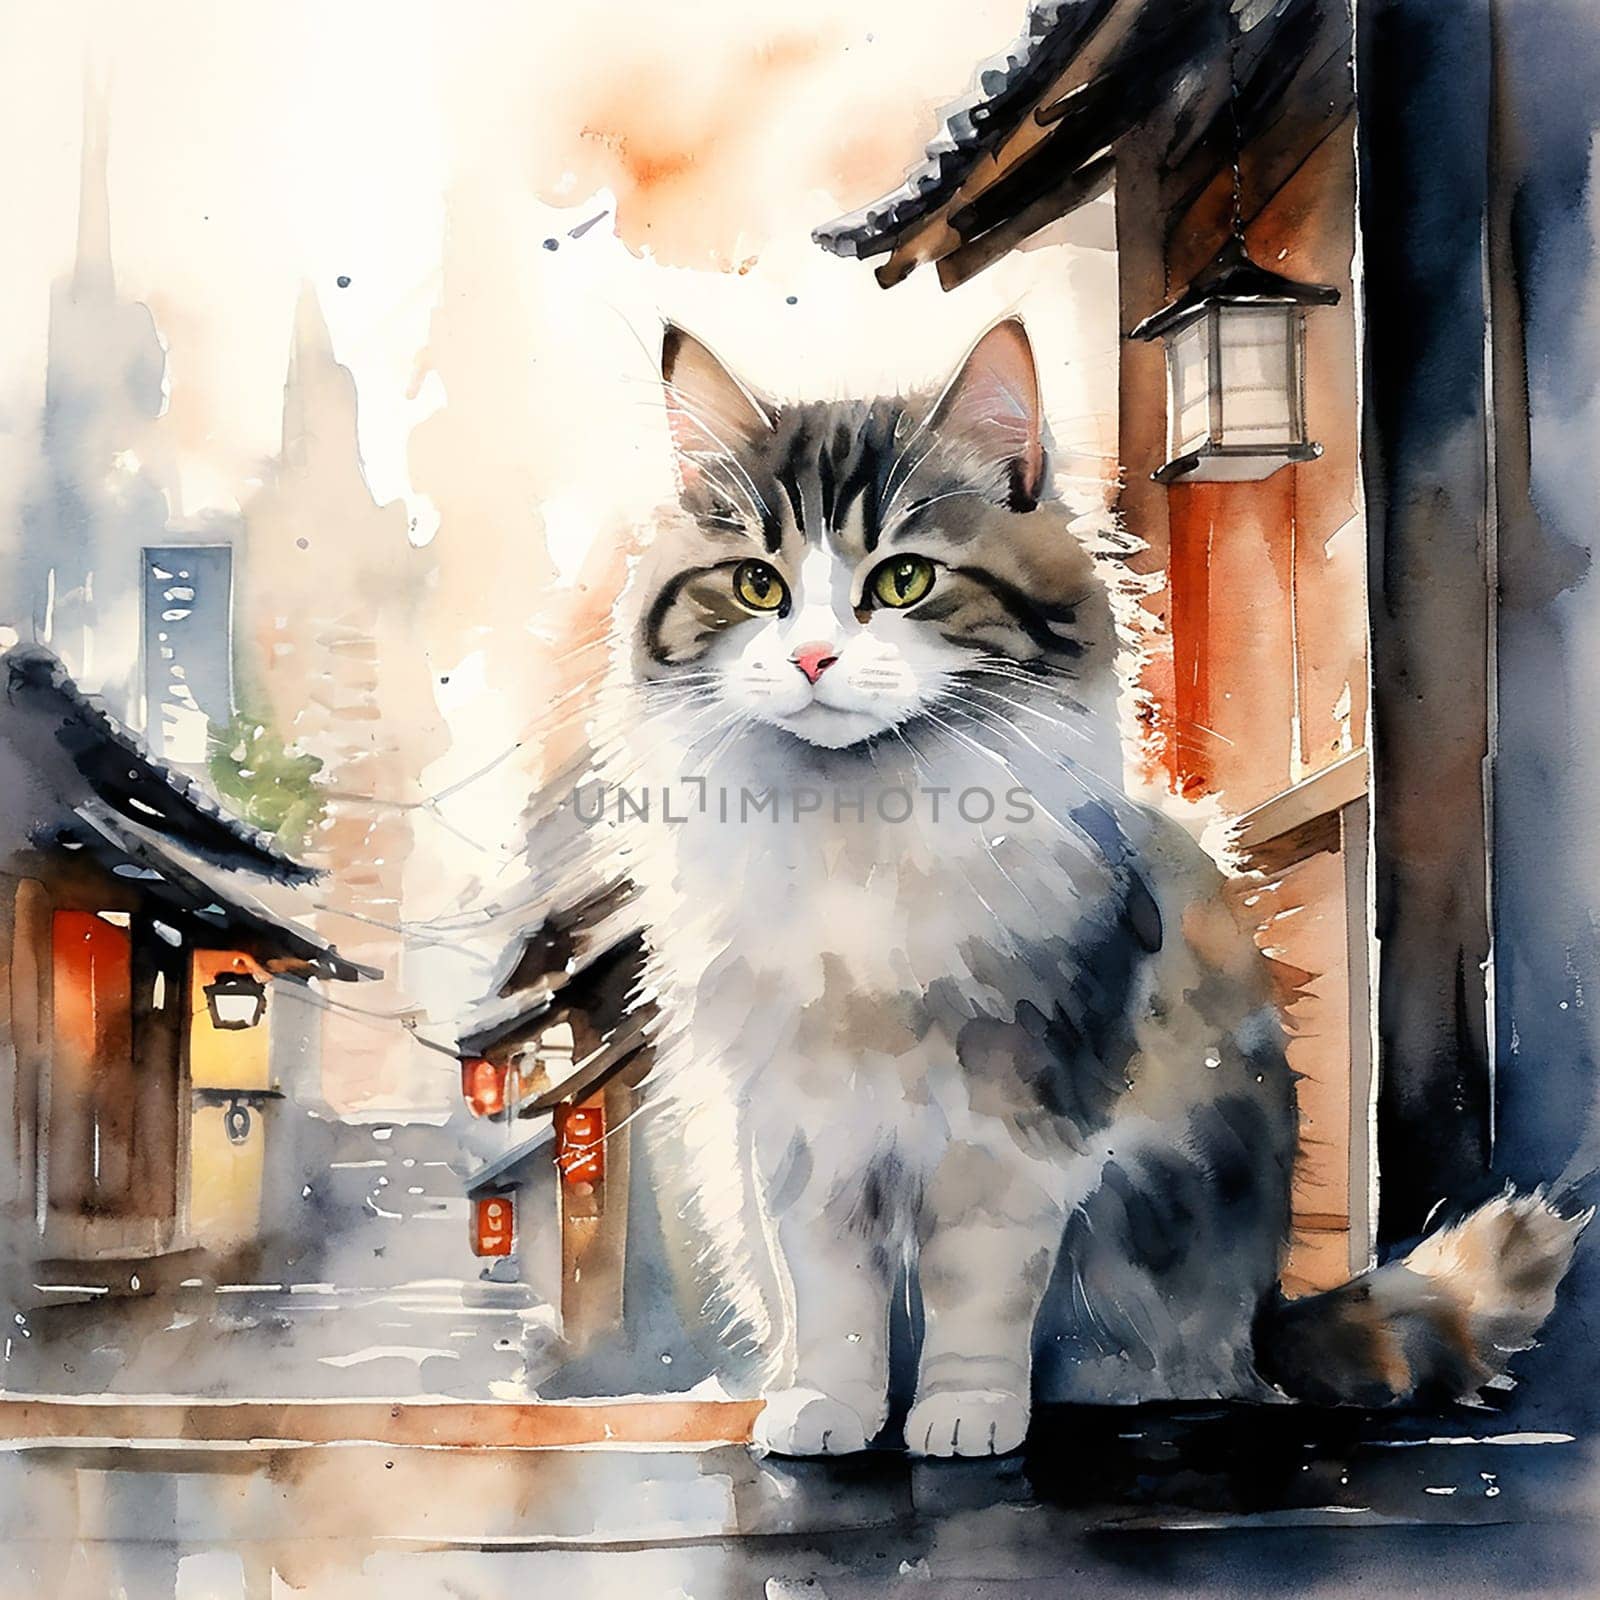 Feline Grace: Cat Watercolor Capturing Serene Atmosphere of Japan